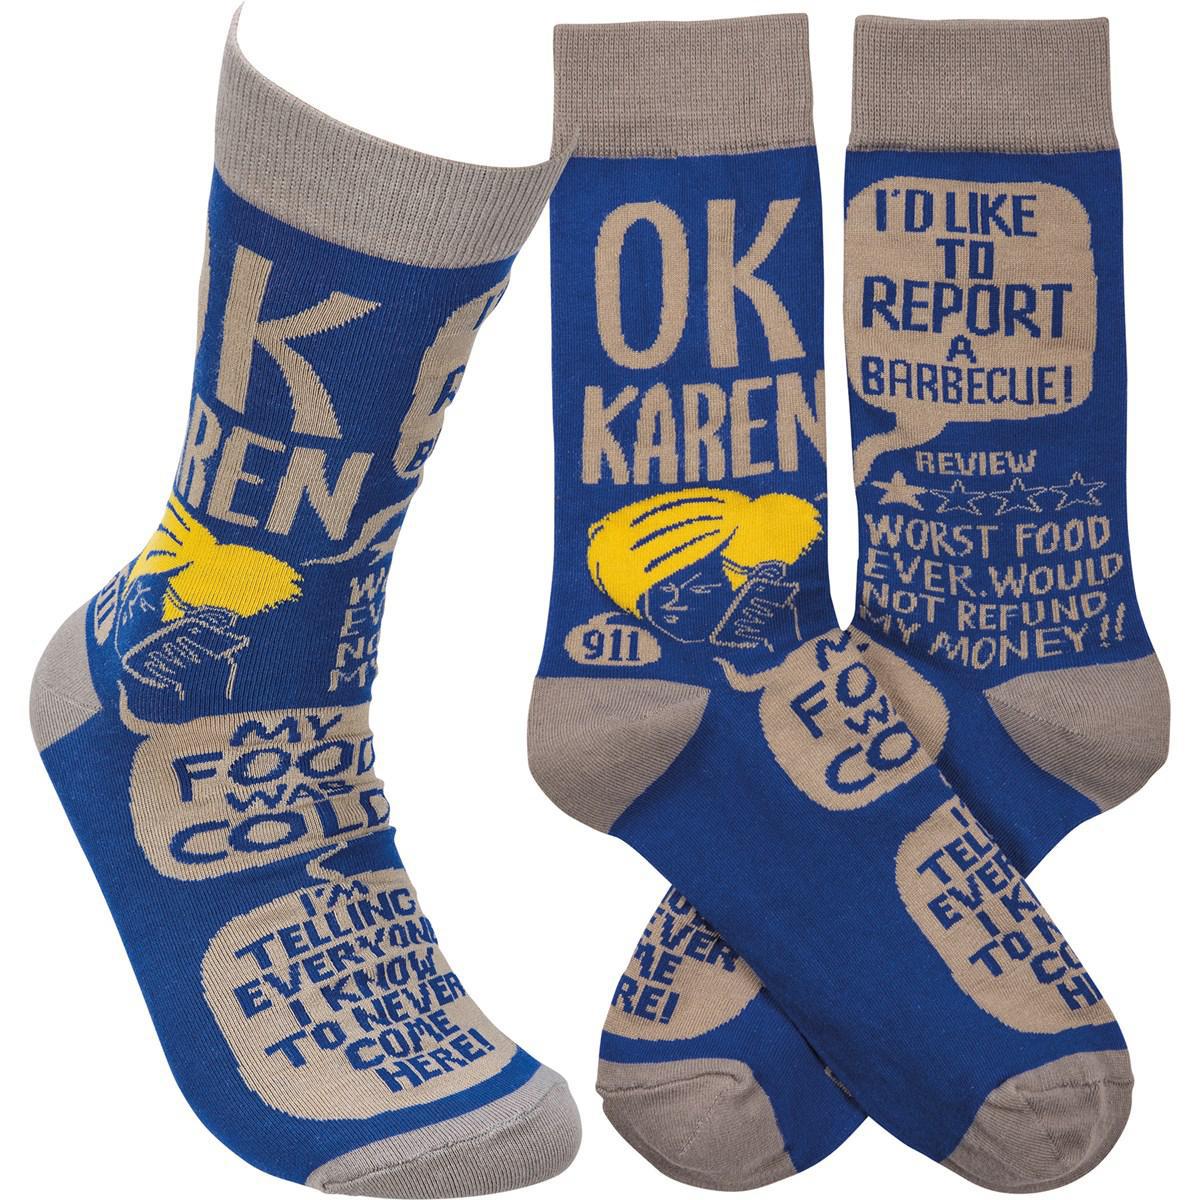 Ok Karen Socks